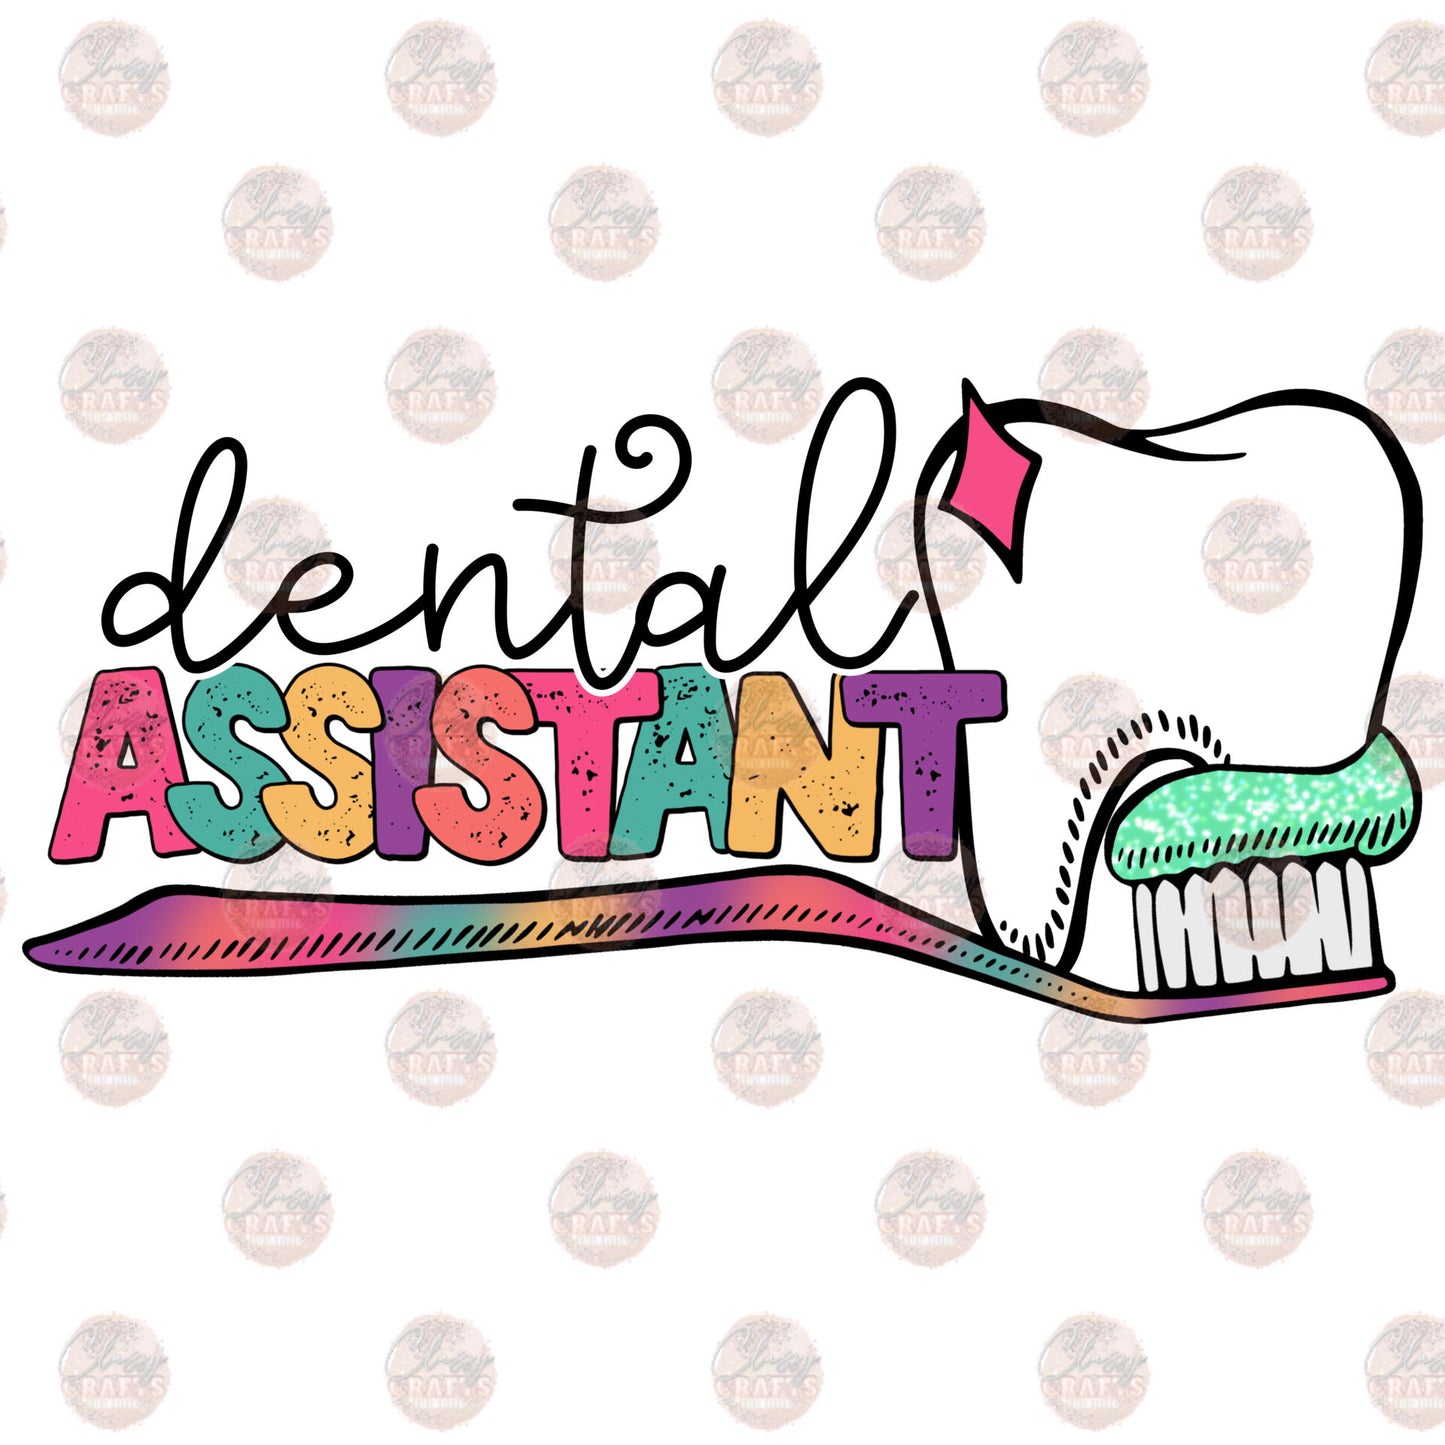 Dental Assistant - Sublimation Transfer